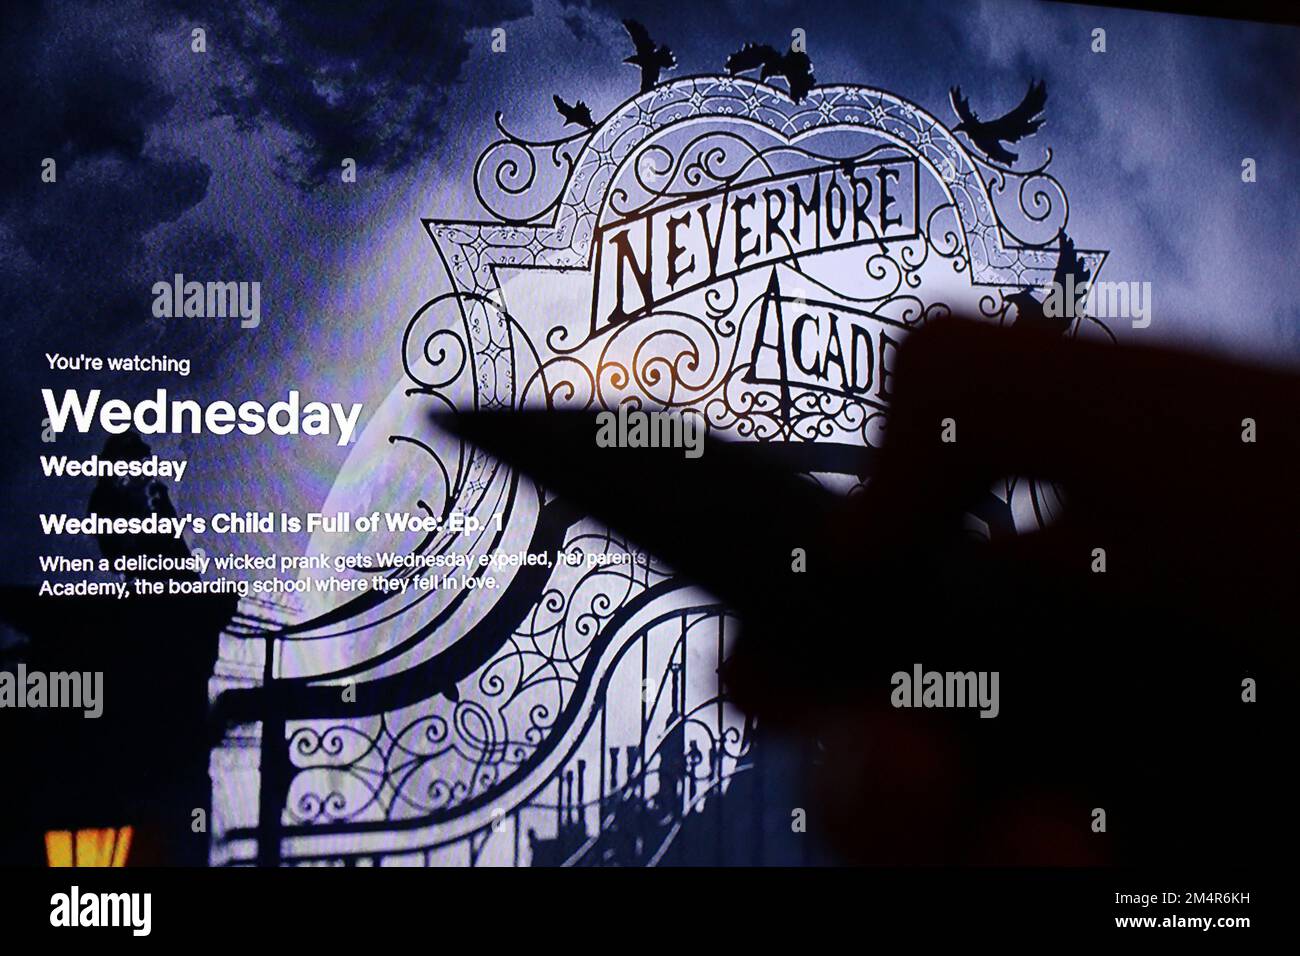 Die Netflix App auf dem fernsehbildschirm zeigt die Fernsehserie Mittwoch mit dem Schatten einer Fernsehfernbedienung. Stockfoto